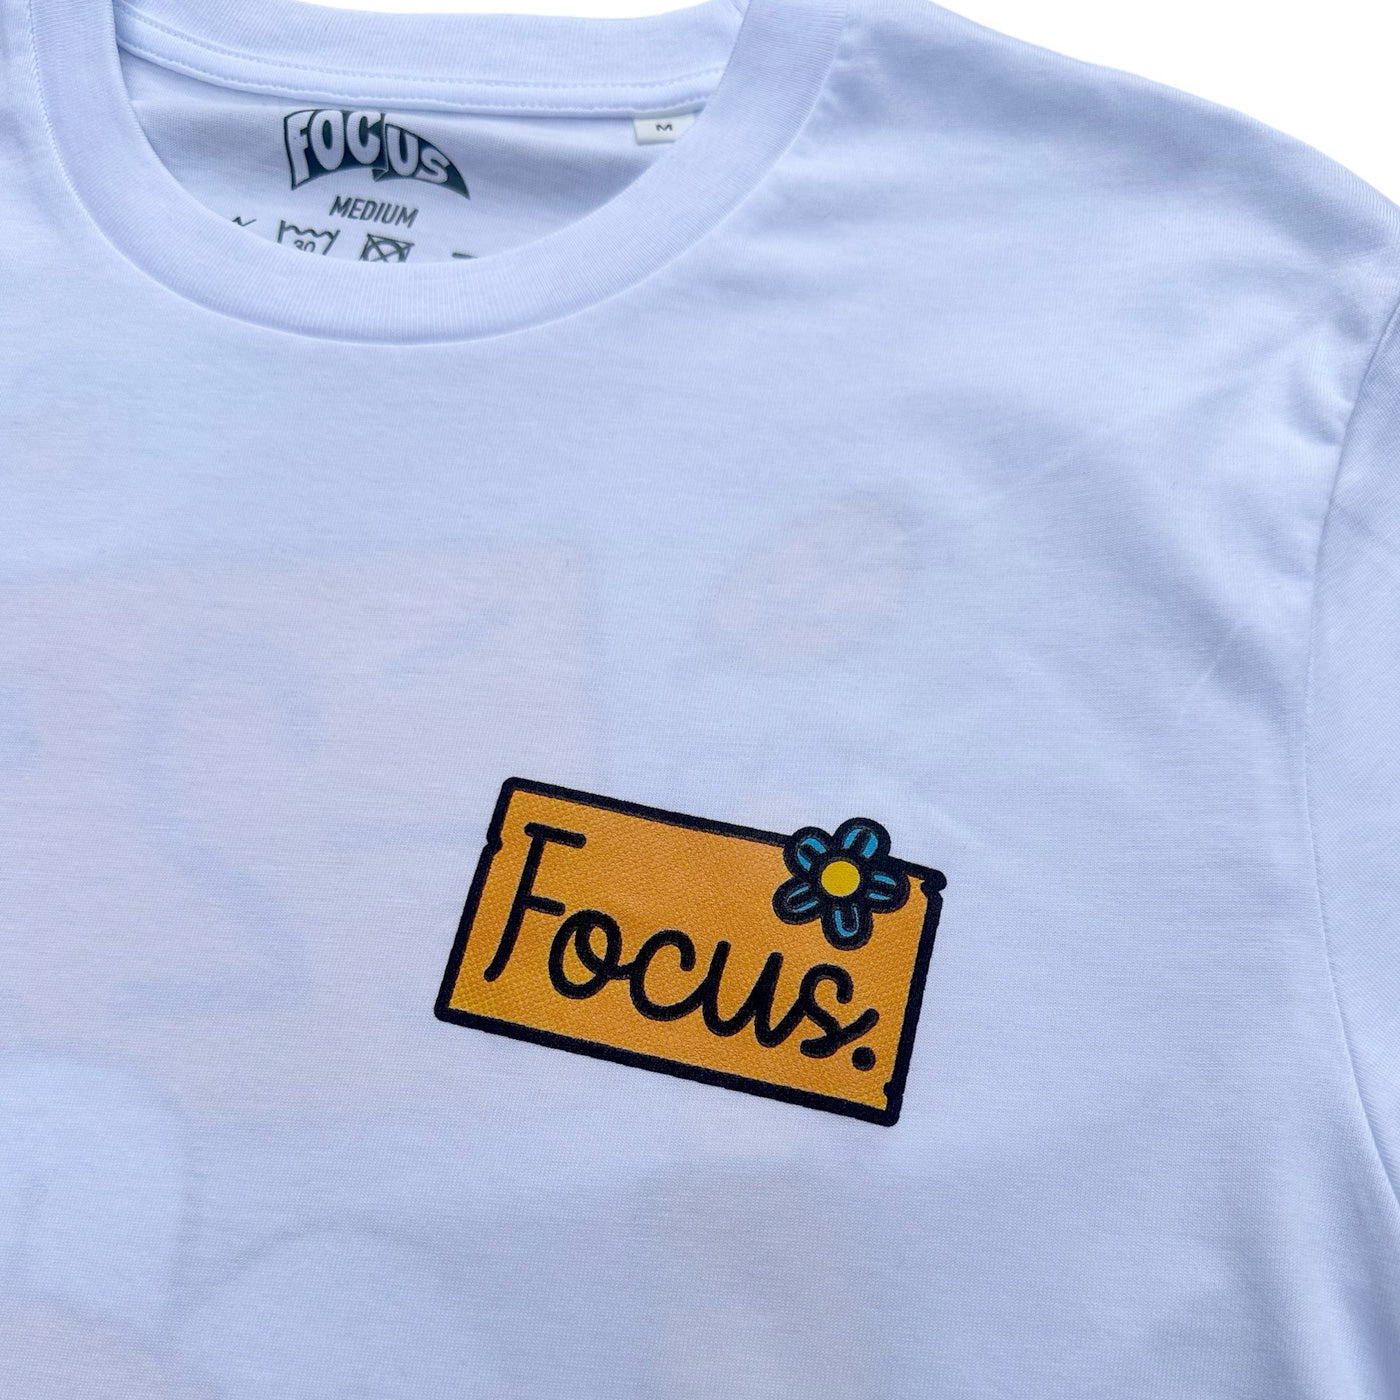 Focus 23rd Anniversary T-shirt - White